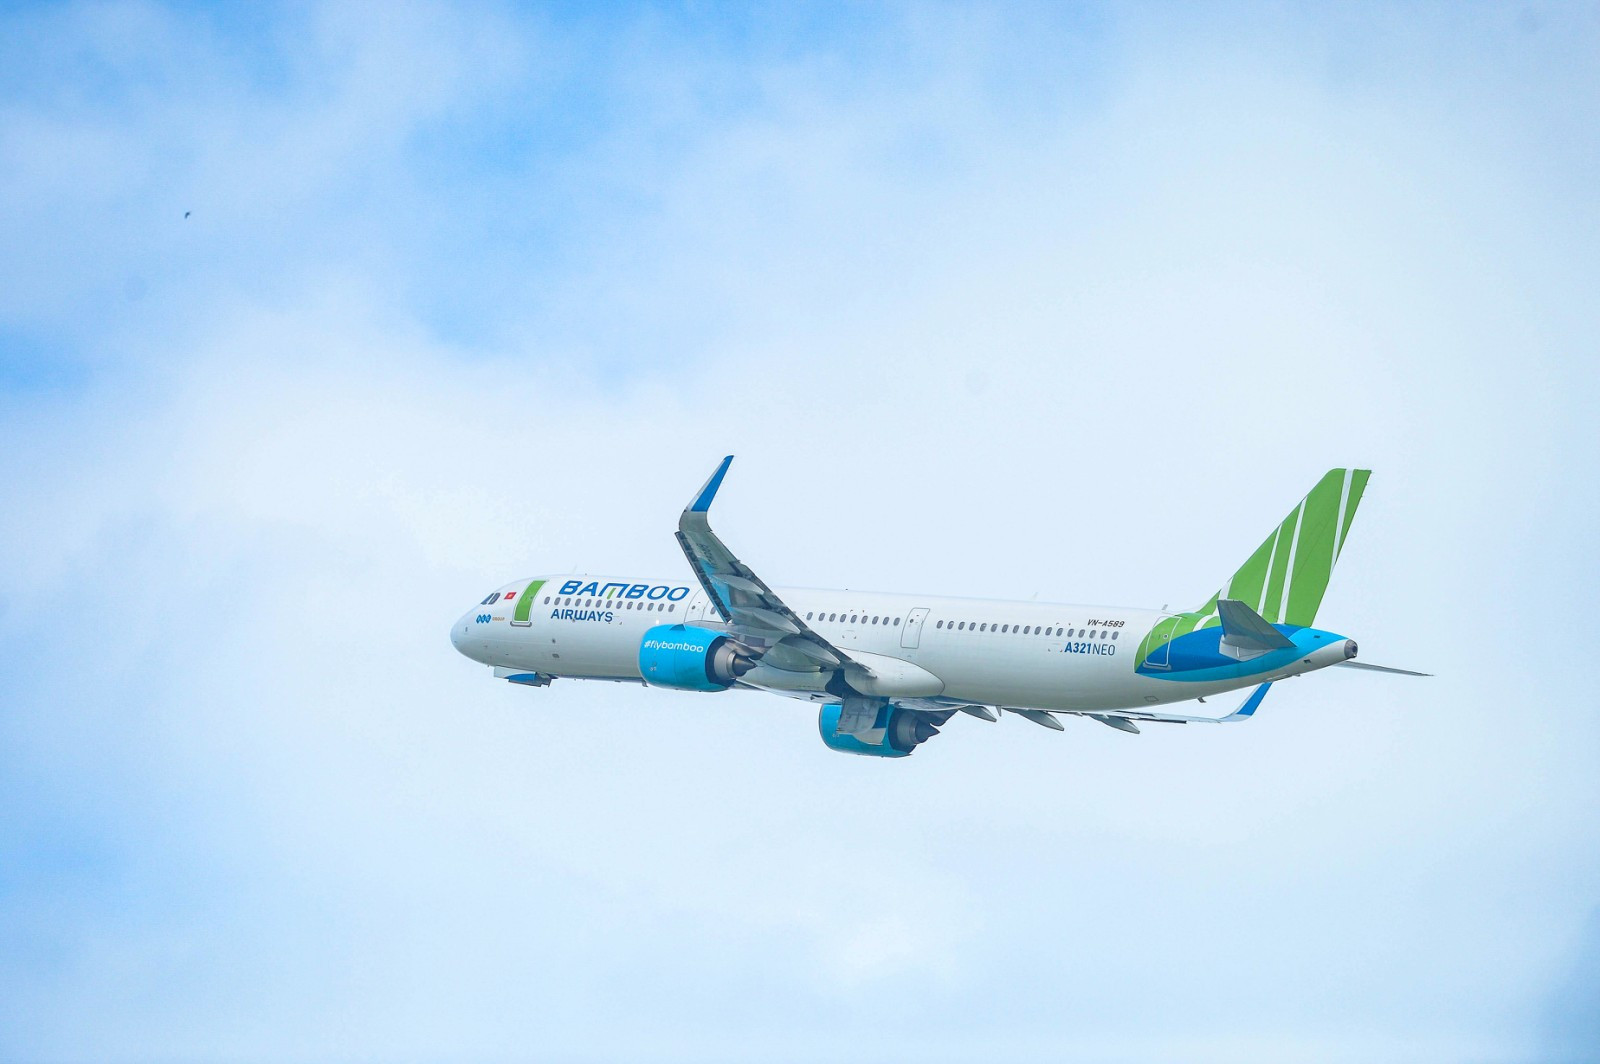 Bamboo Airways tung chính sách hỗ trợ hoàn hủy vé linh hoạt, đảm bảo tối ưu quyền lợi của khách hàng